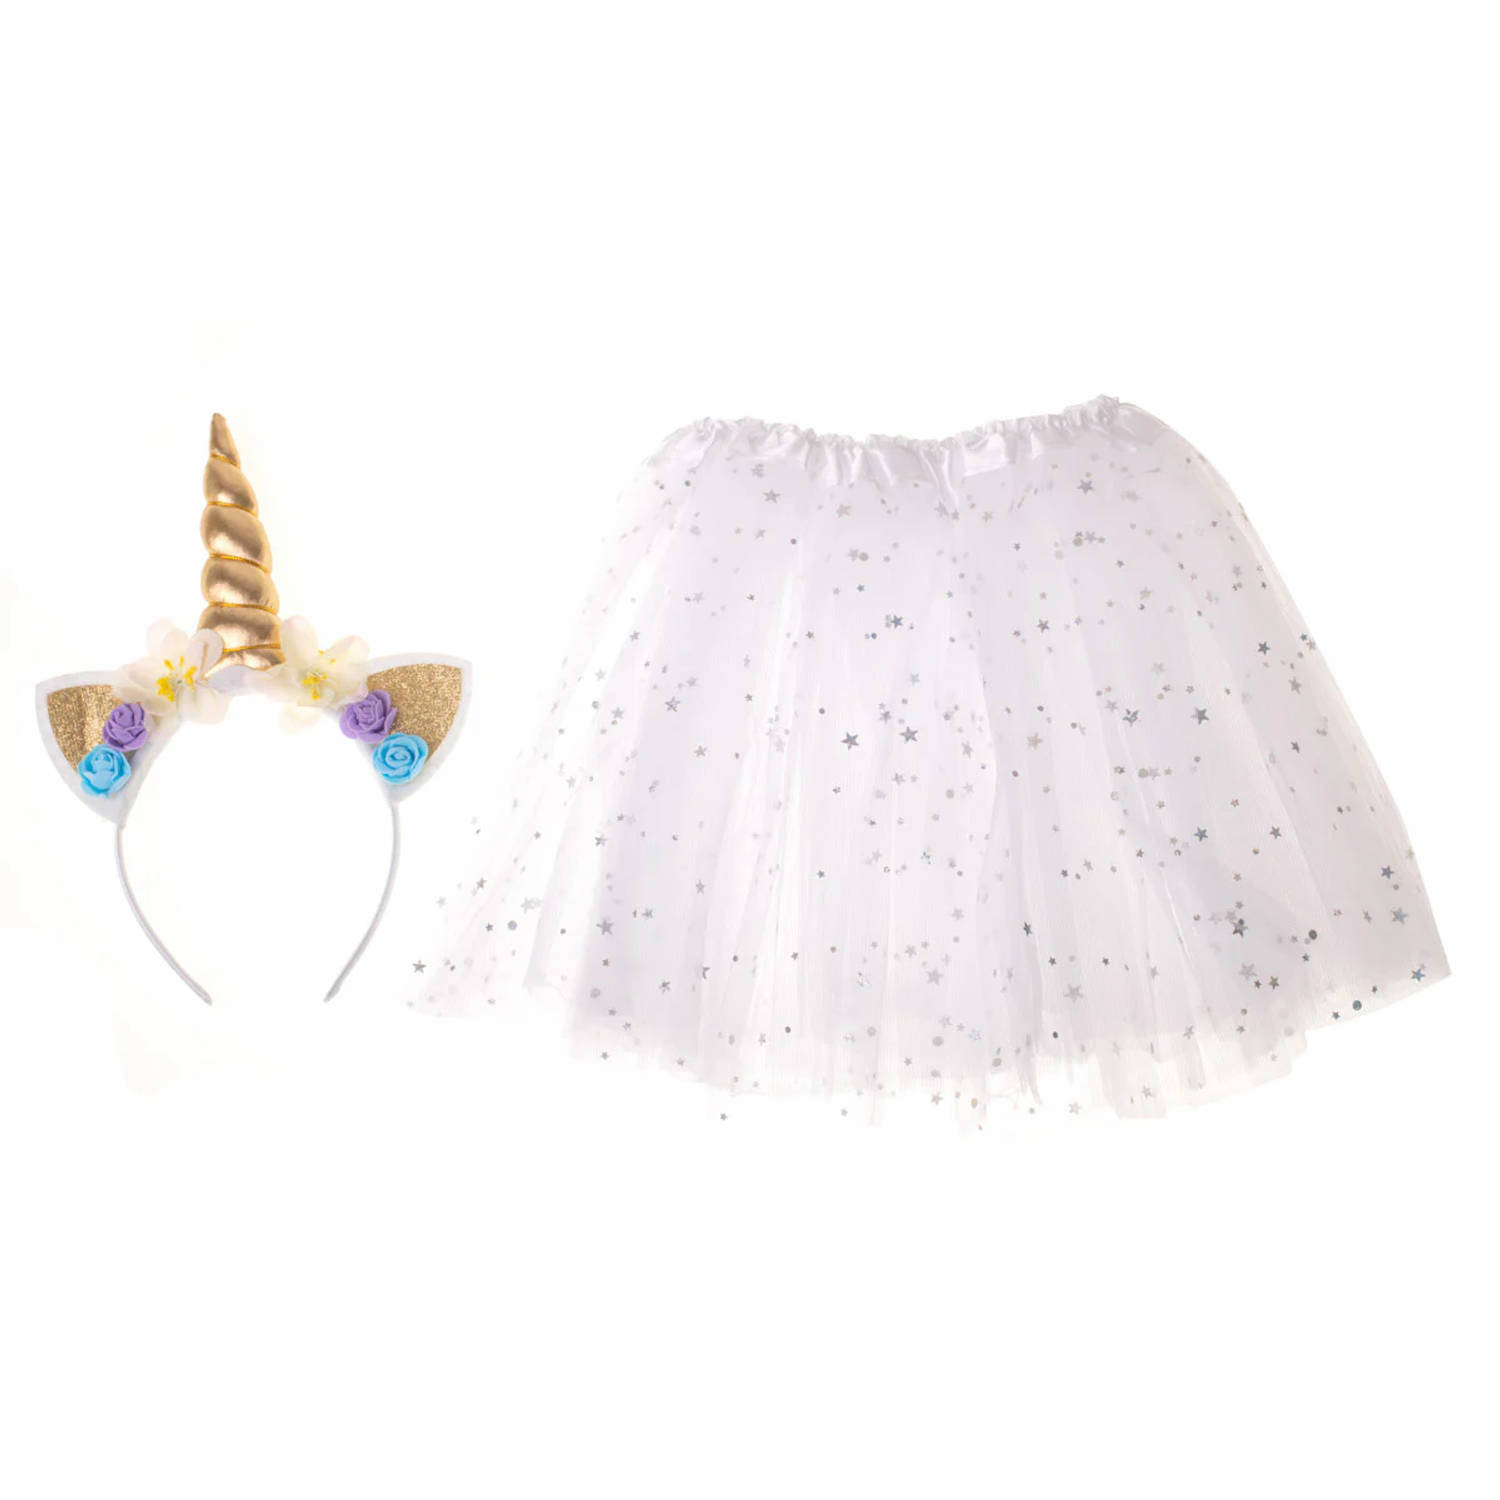 Kinder verkleedkleren / carnaval outfit unicorn glitters met tutu wit - Verkeedset voor kinderen - Met haarband en tutu